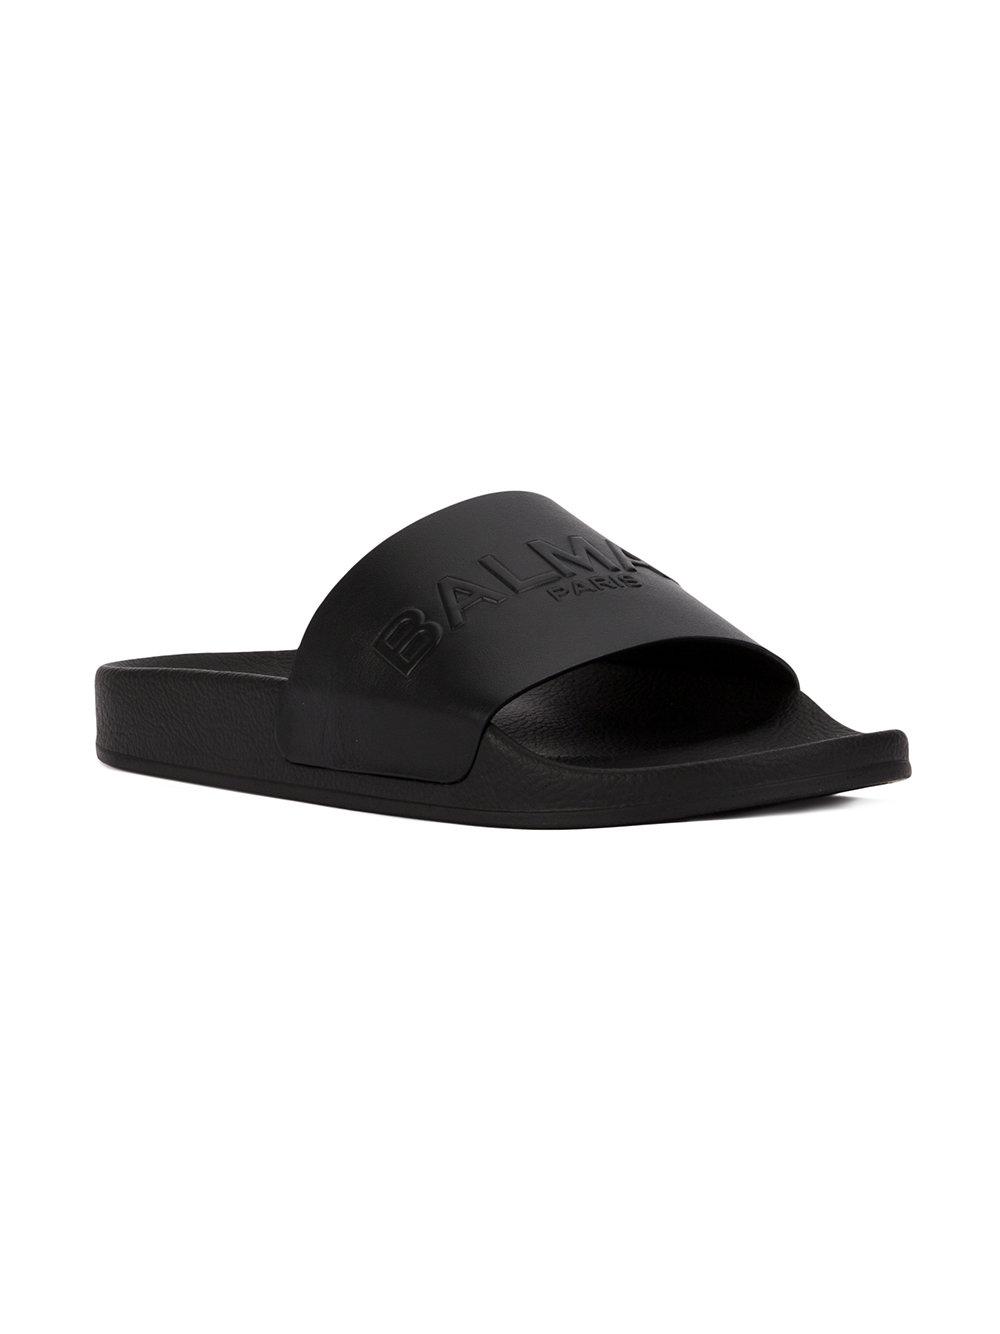 Balmain Leather Embossed Logo Slide Sandals in Black for Men - Lyst